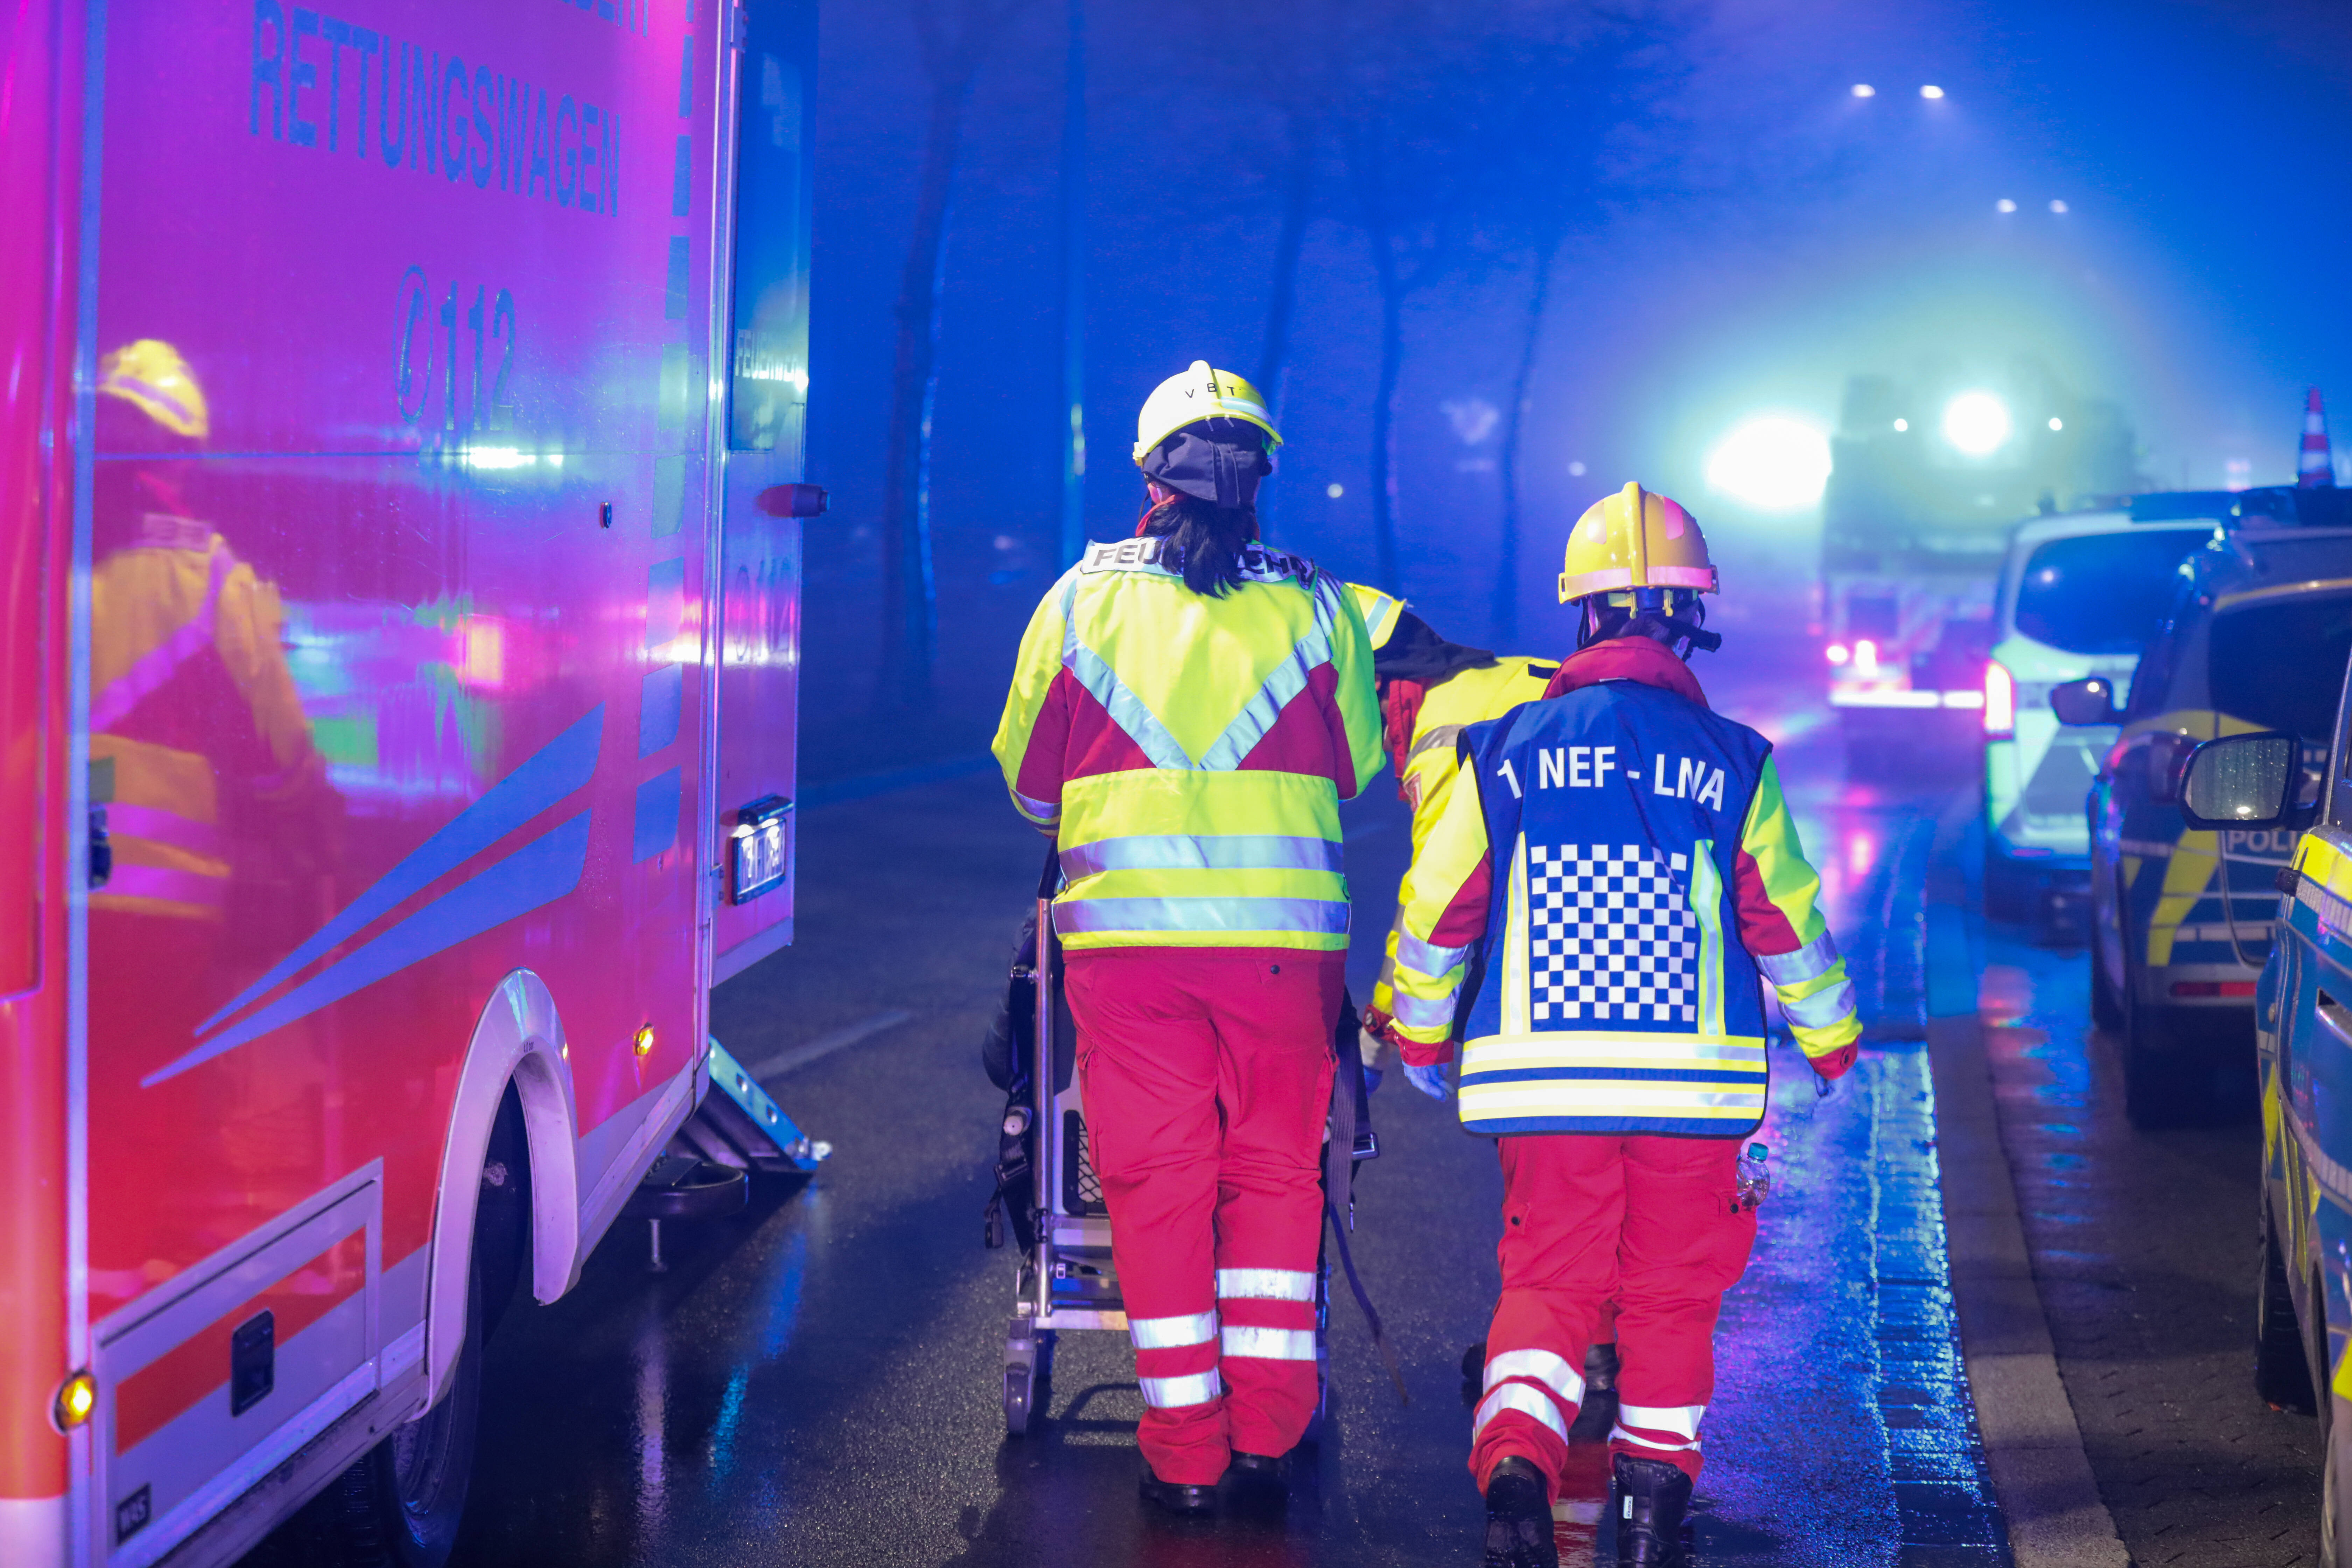 Schrecklicher Unfall nach Faschingsfest - Busfahrer zwischen 2 Bussen eingeklemmt - Er hatte keine Überlebenschance!